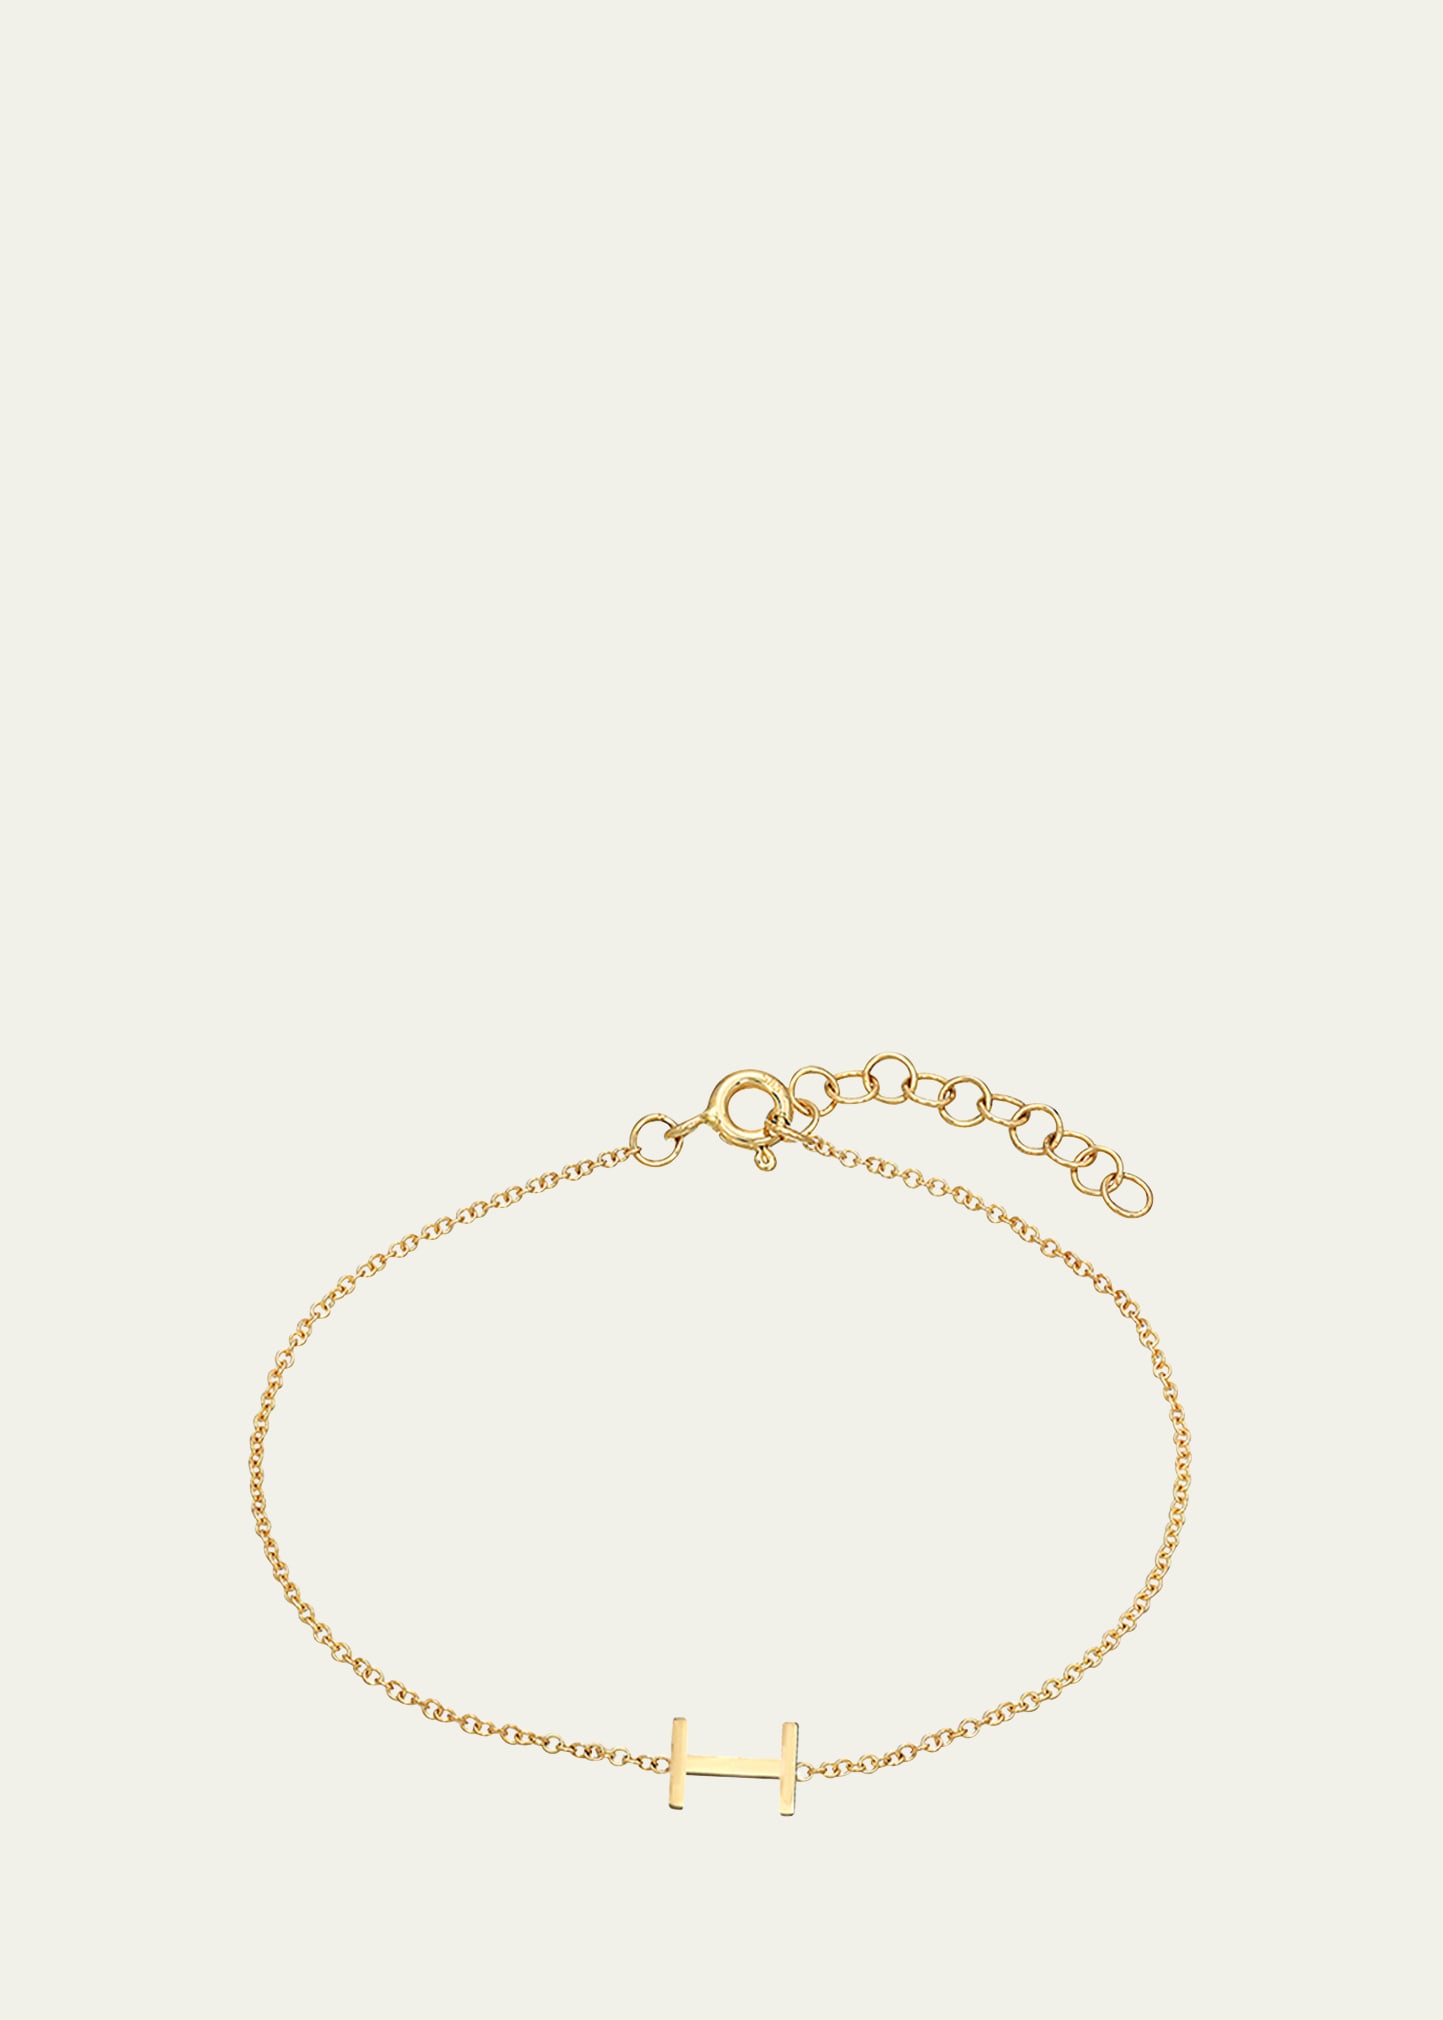 Zoe Lev Jewelry 14k Yellow Gold Initial X Bracelet